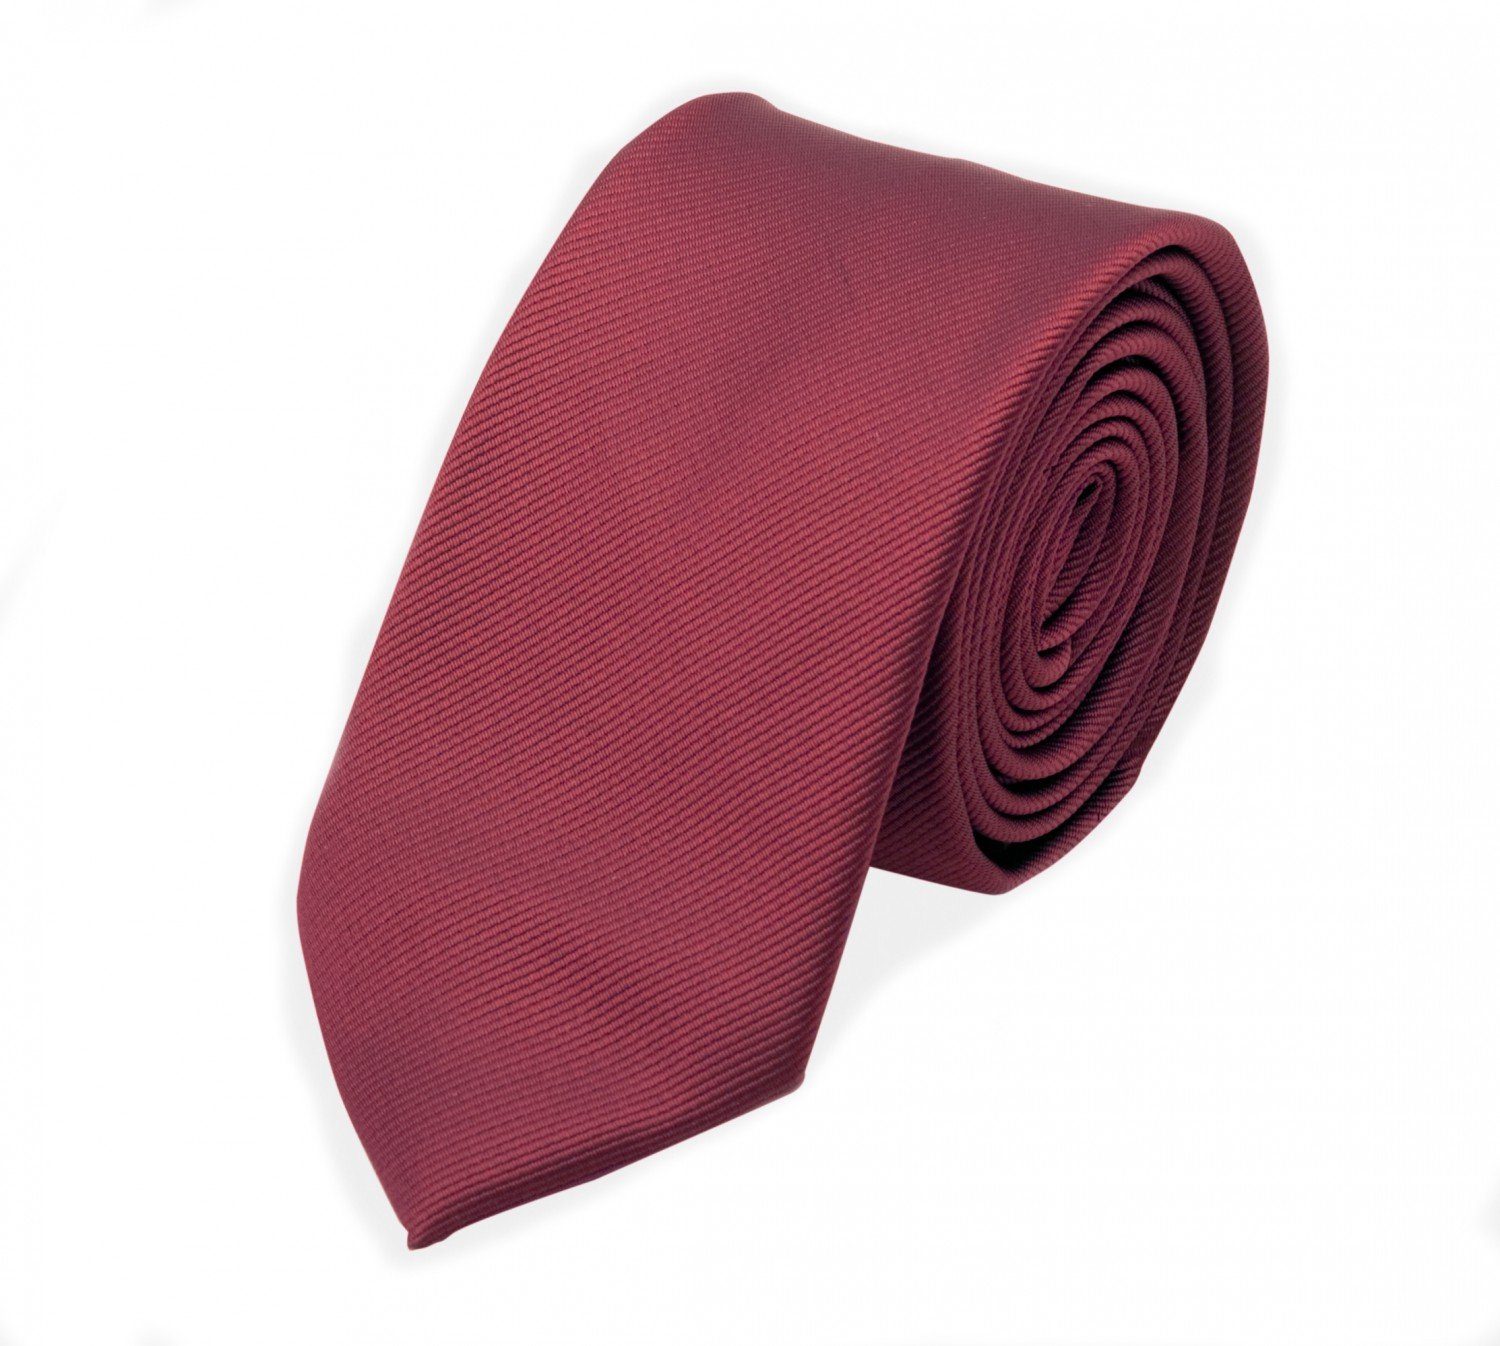 Fabio Farini Krawatte Herren Krawatten mit Farbton Rot - Schlips in 6cm (ohne Box, Gestreift) Schmal (6cm), Rot